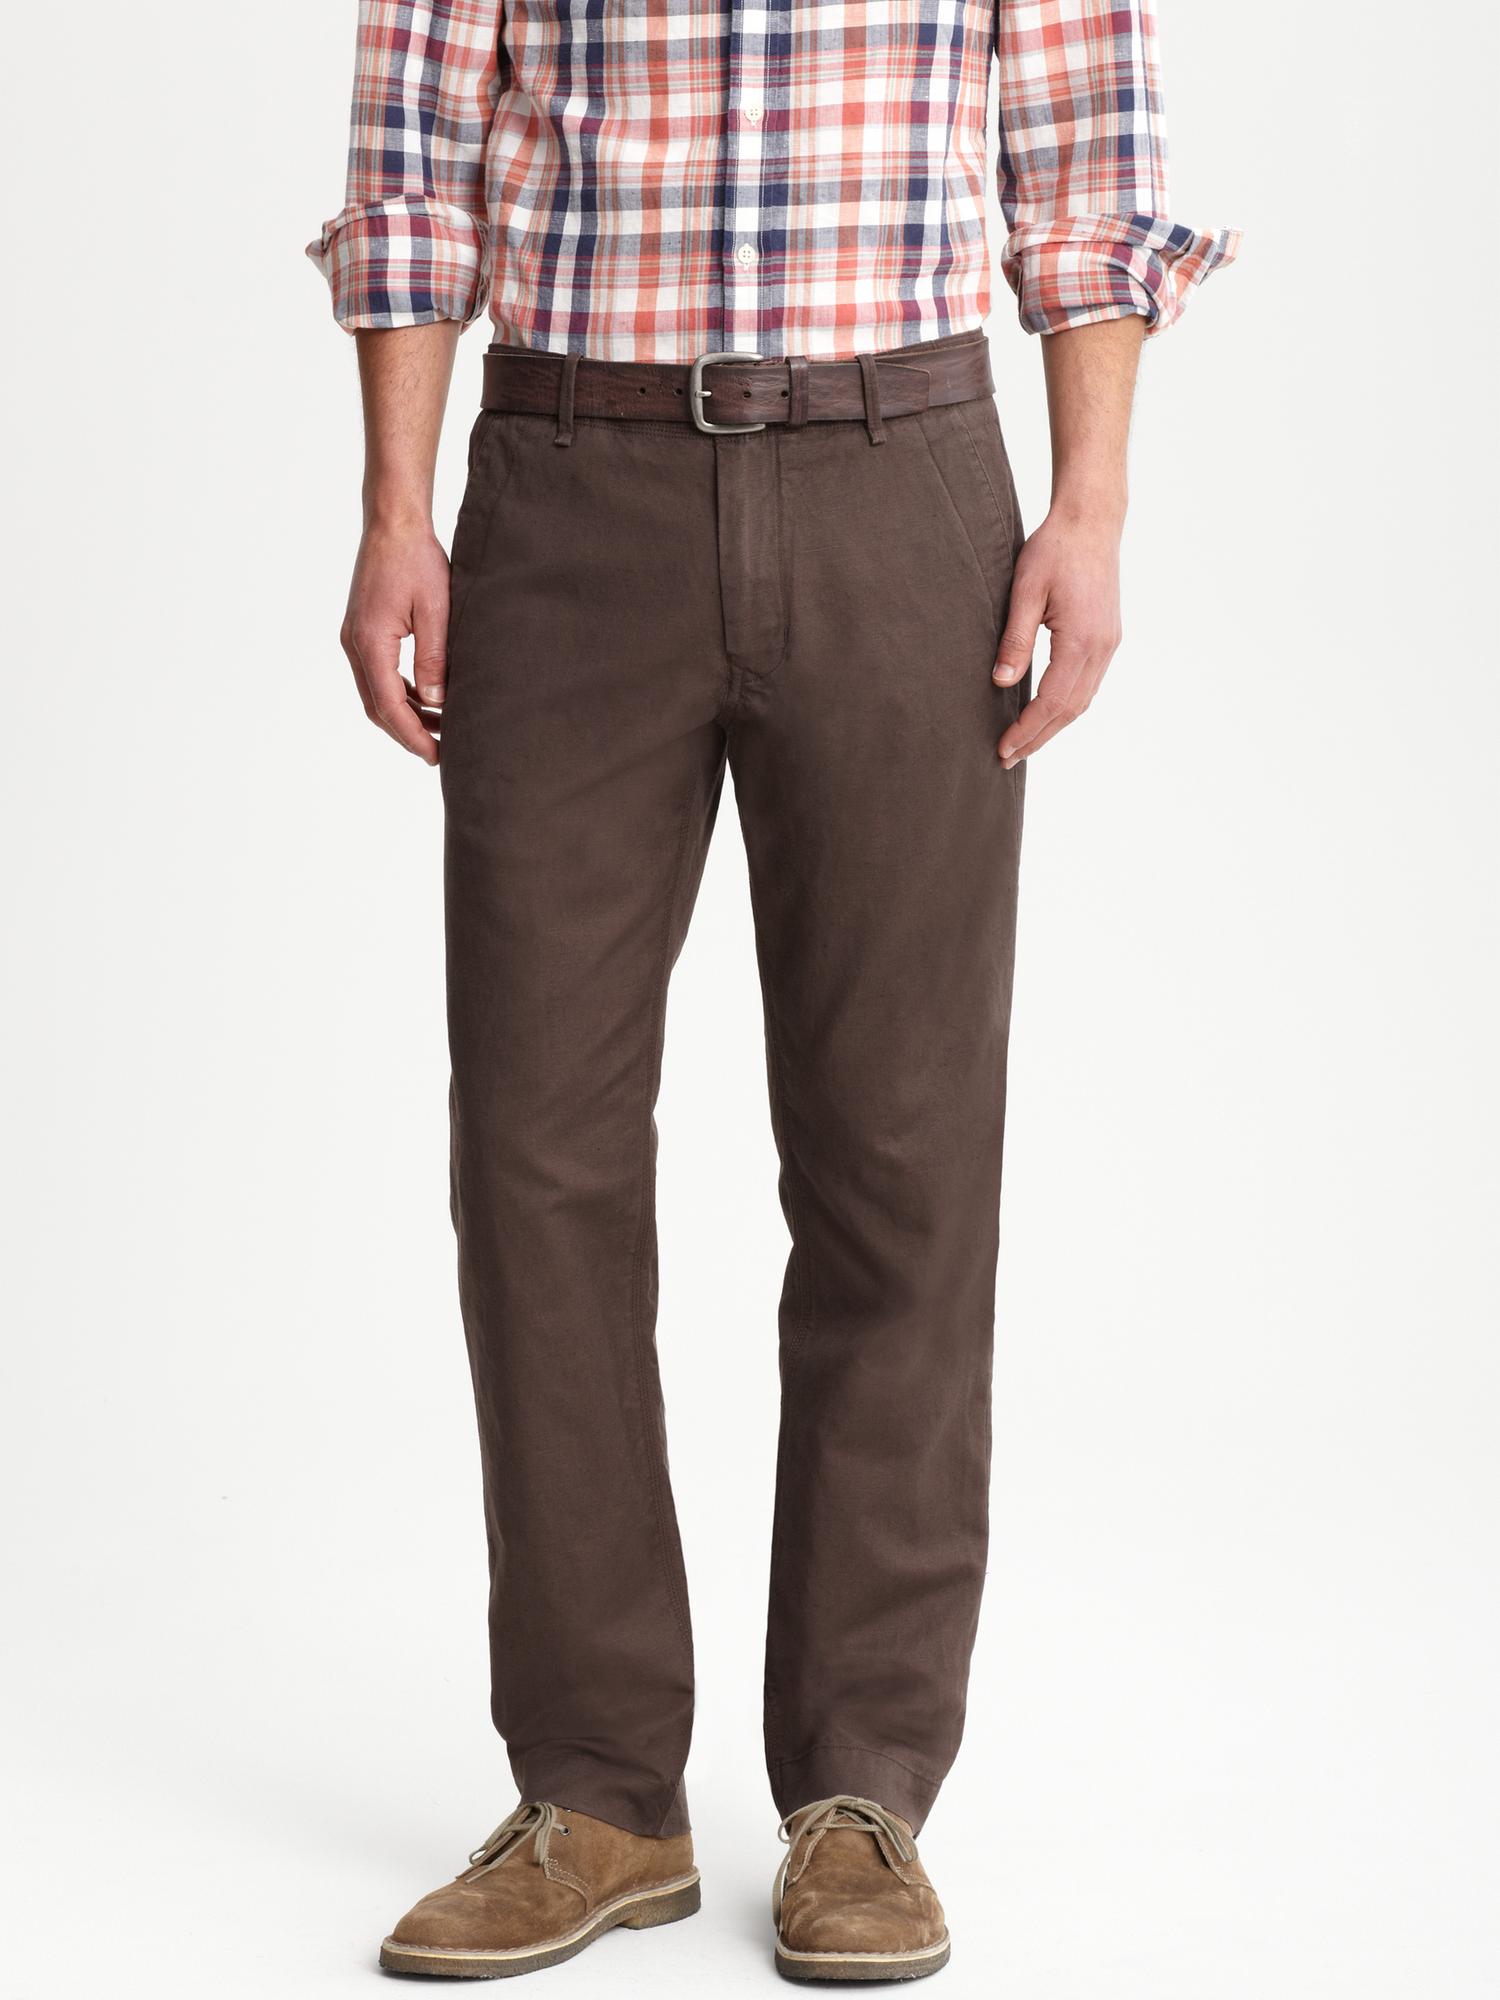 Straight fit linen/cotton utility pant